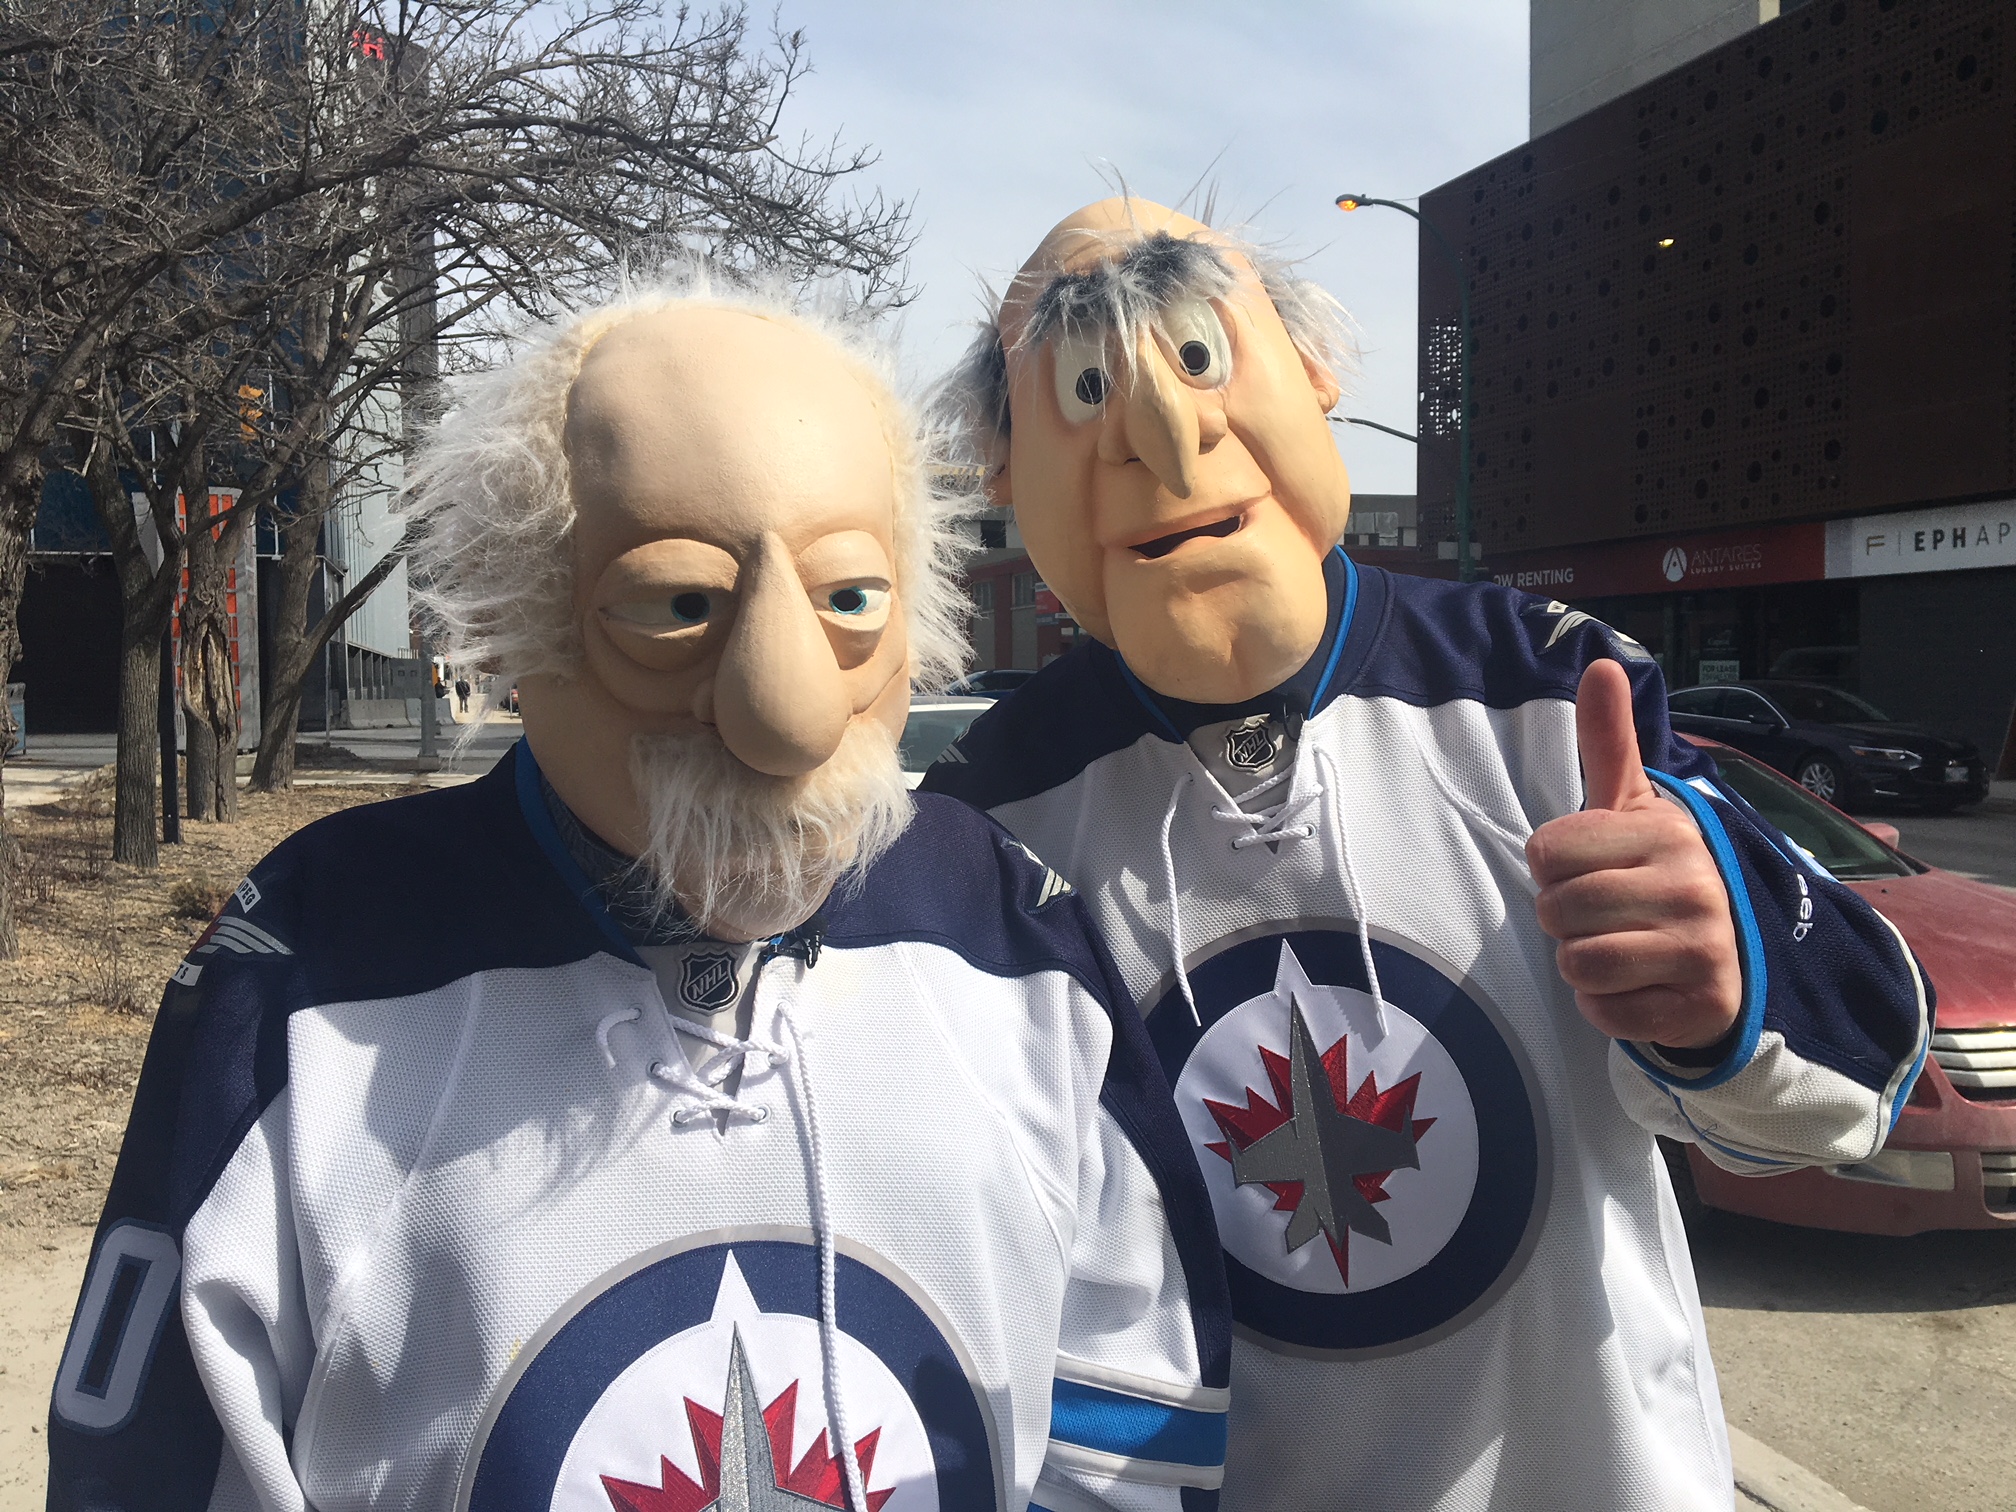  Ce duo de Winnipeg se déguise en personnages Muppets Statler et Waldorf depuis quelques années.